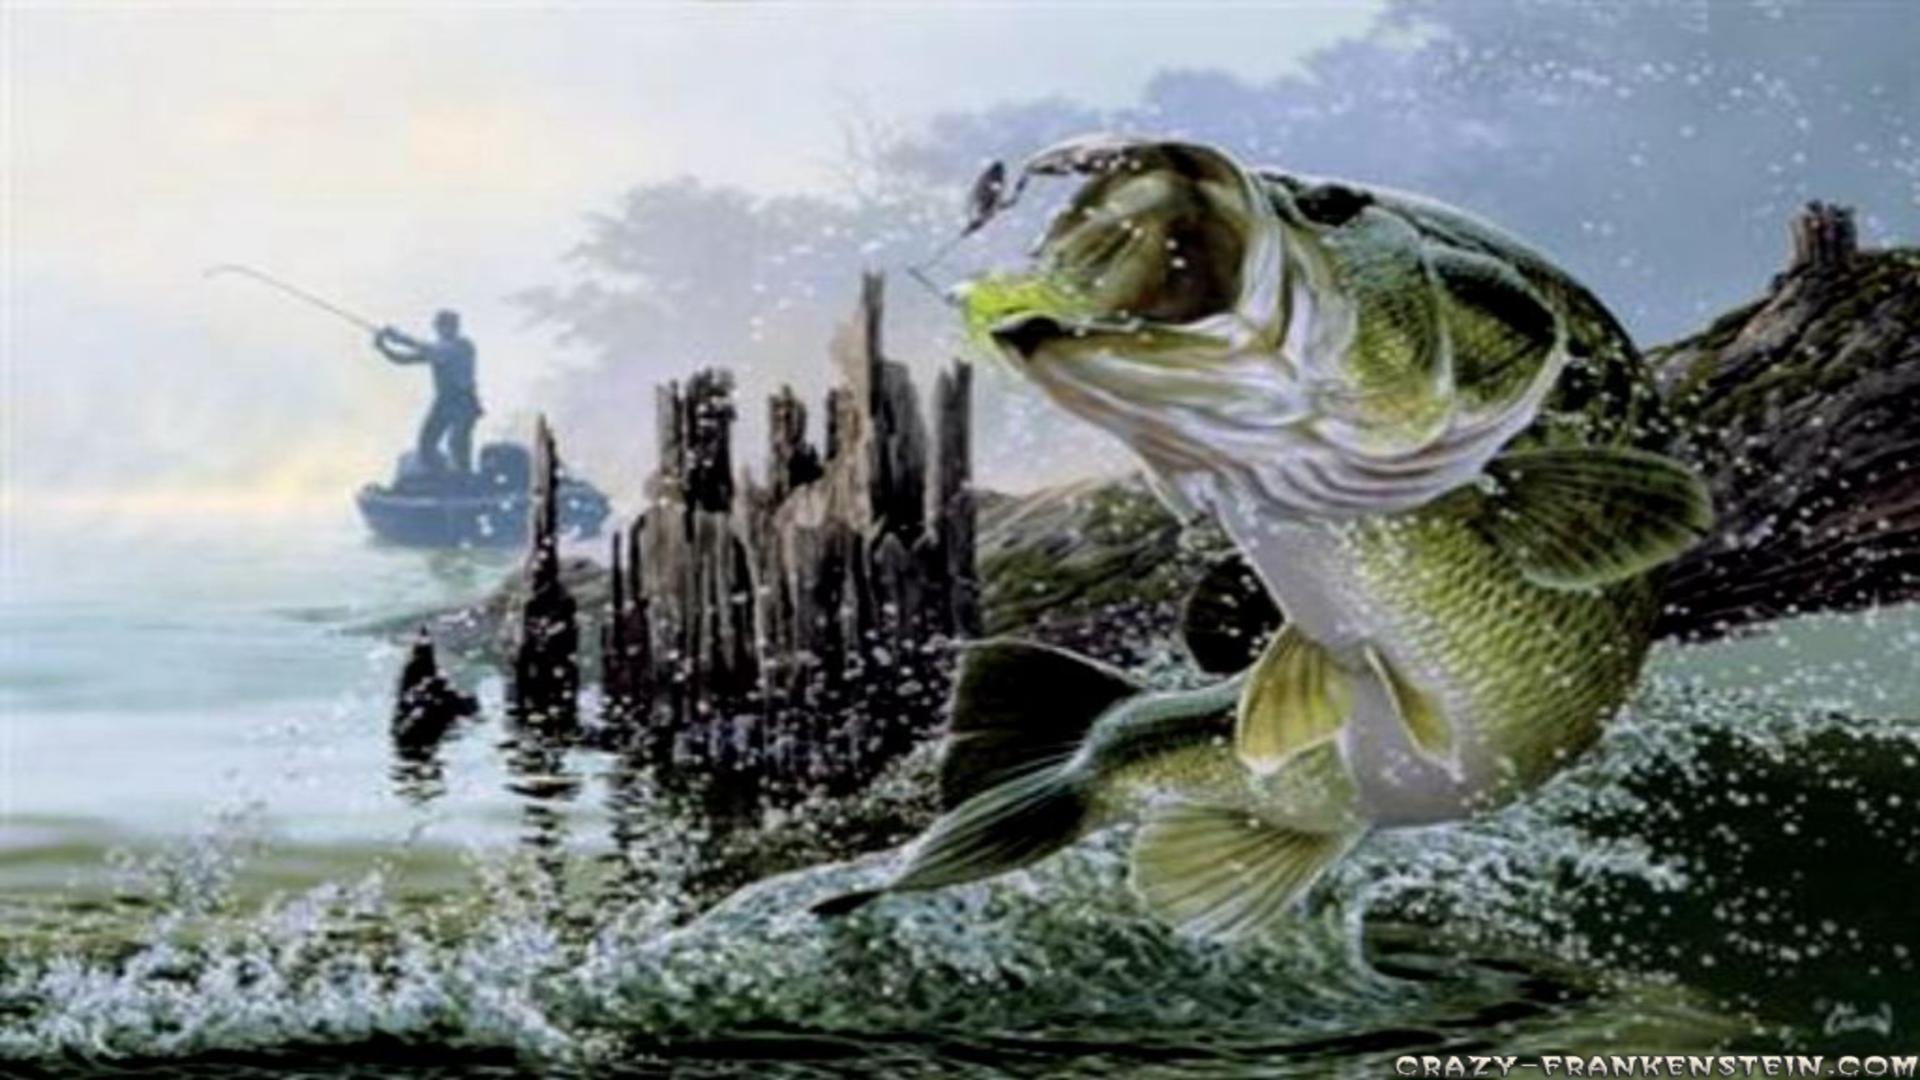 bass fishing wallpaper hd,green sea turtle,turtle,sea turtle,reptile,fish